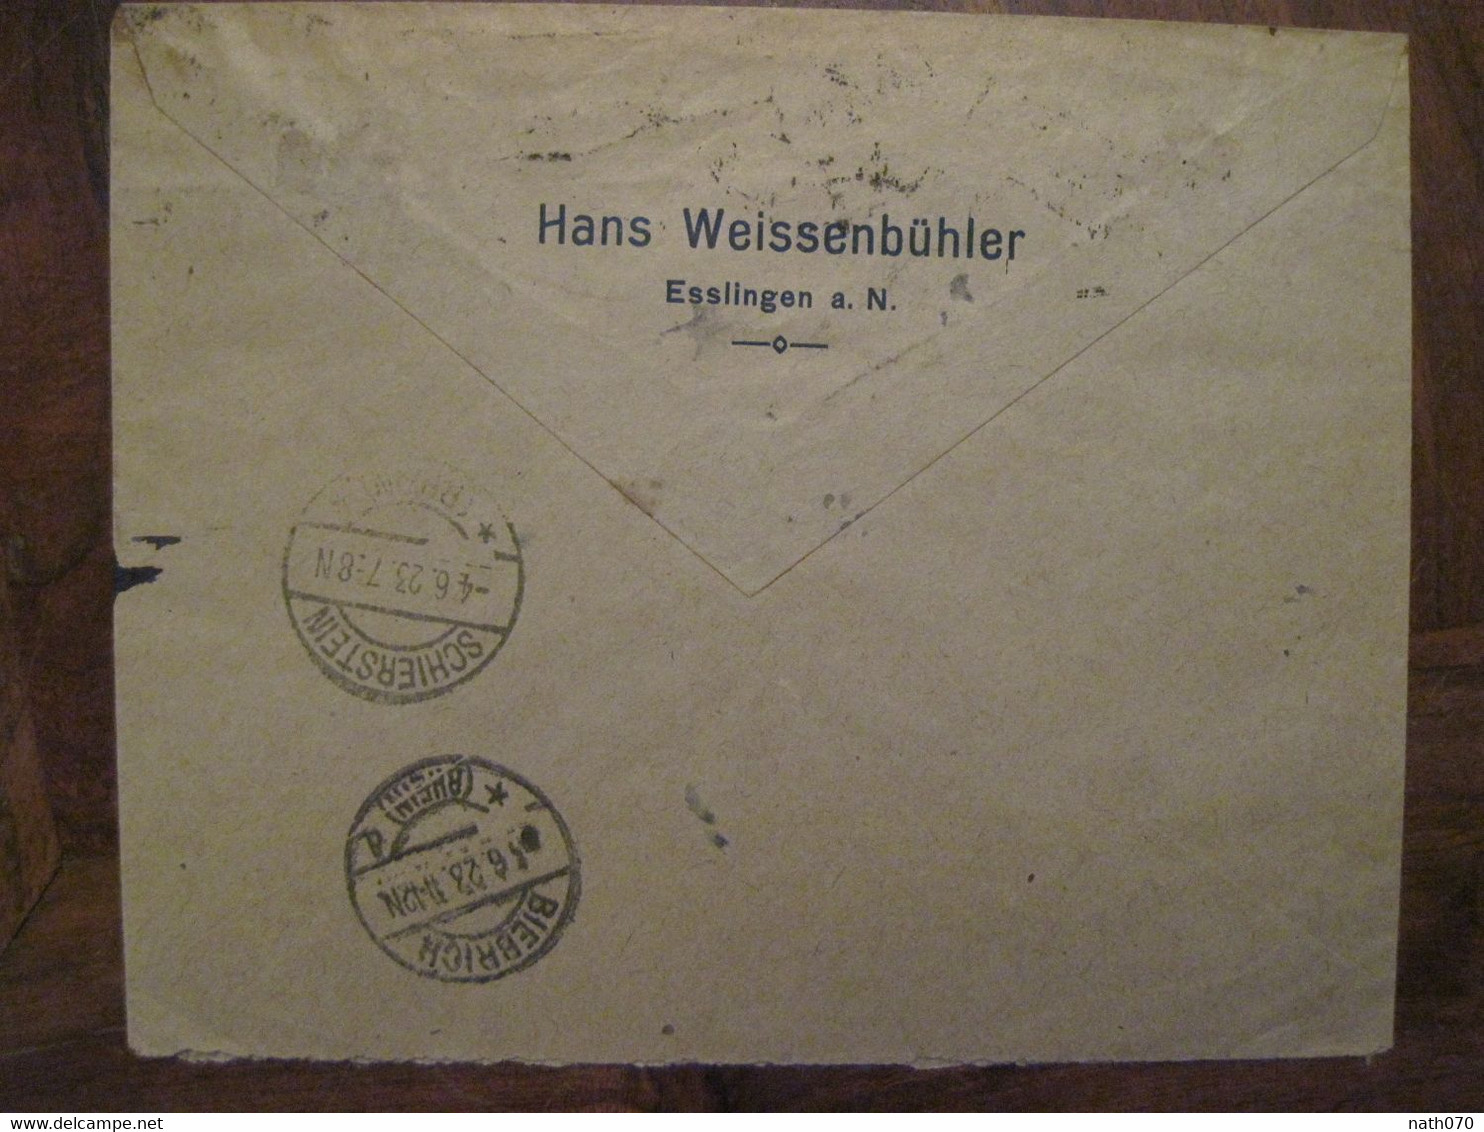 1923 Esslingen Schierstein Flugpost Luftpost Air Mail Poste Aerienne Cover Deutsches Reich DR Germany Einschreiben Horn - Luft- Und Zeppelinpost